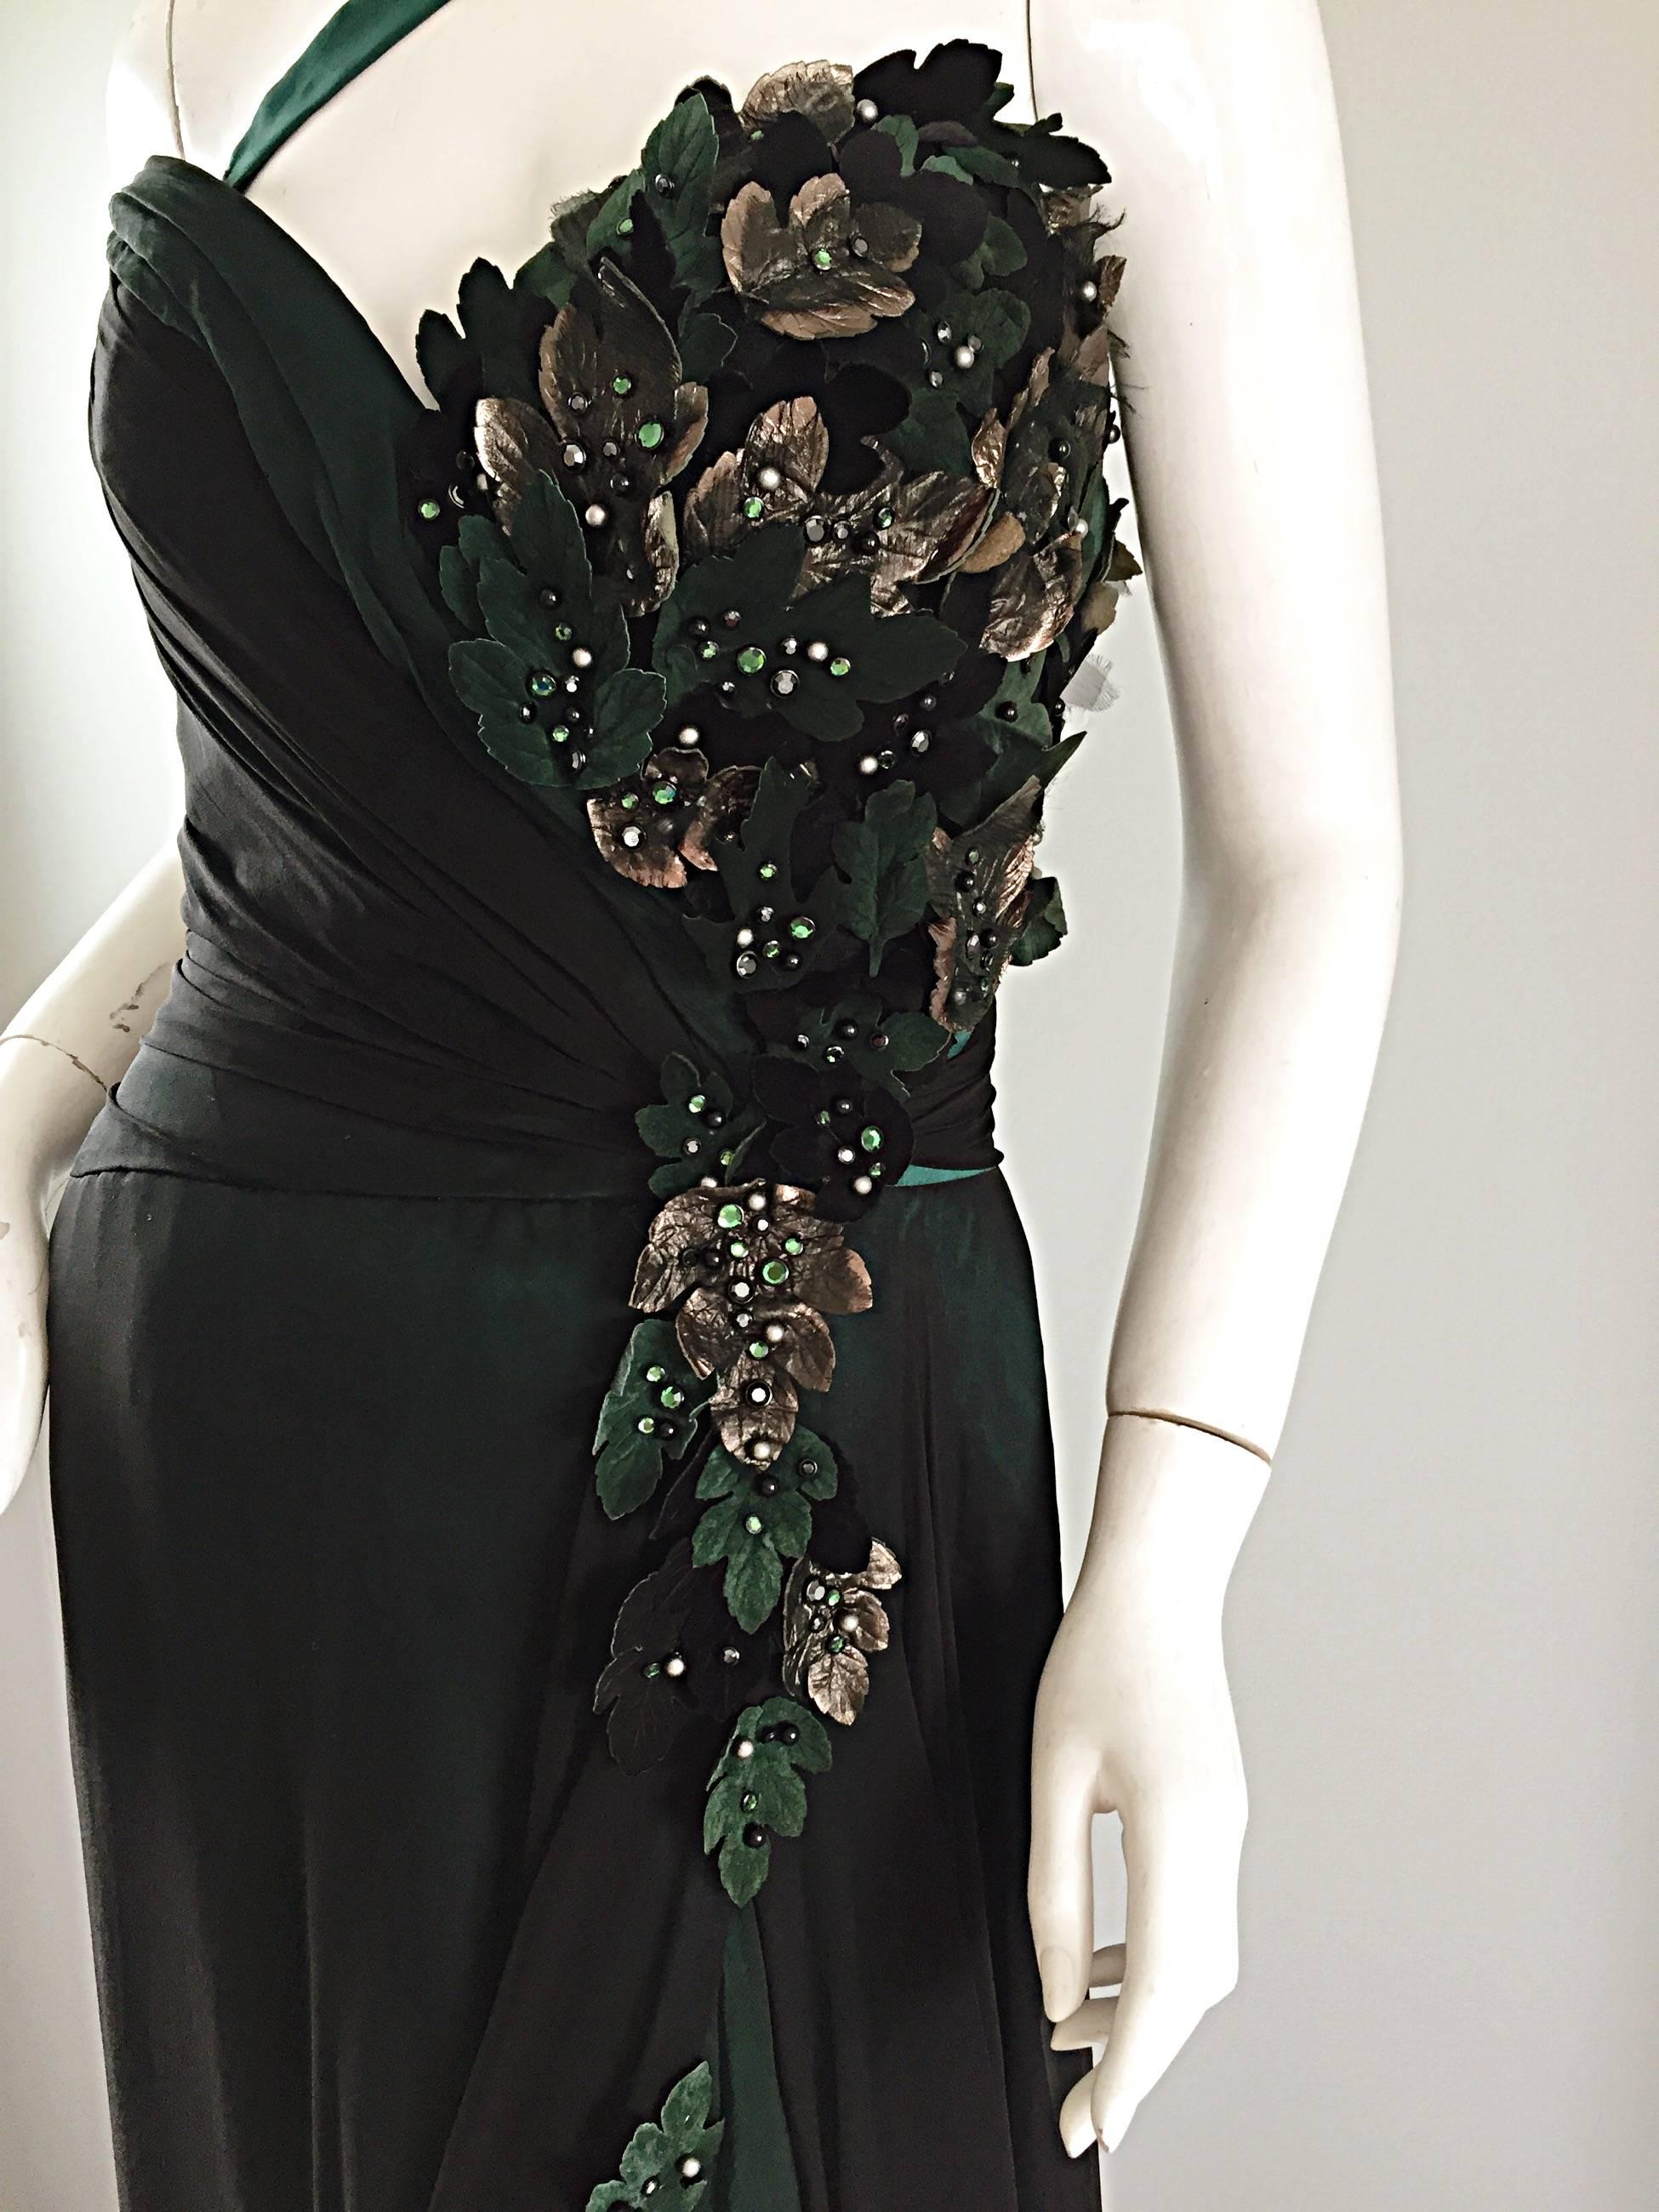 Il s'agit probablement de ma robe BOB MACKIE Couture préférée ! Je ne peux même pas commencer à décrire cette beauté ! Magnifique soie vert émeraude avec superposition de mousseline de soie noire. Il est doté d'une bretelle convertible qui peut être